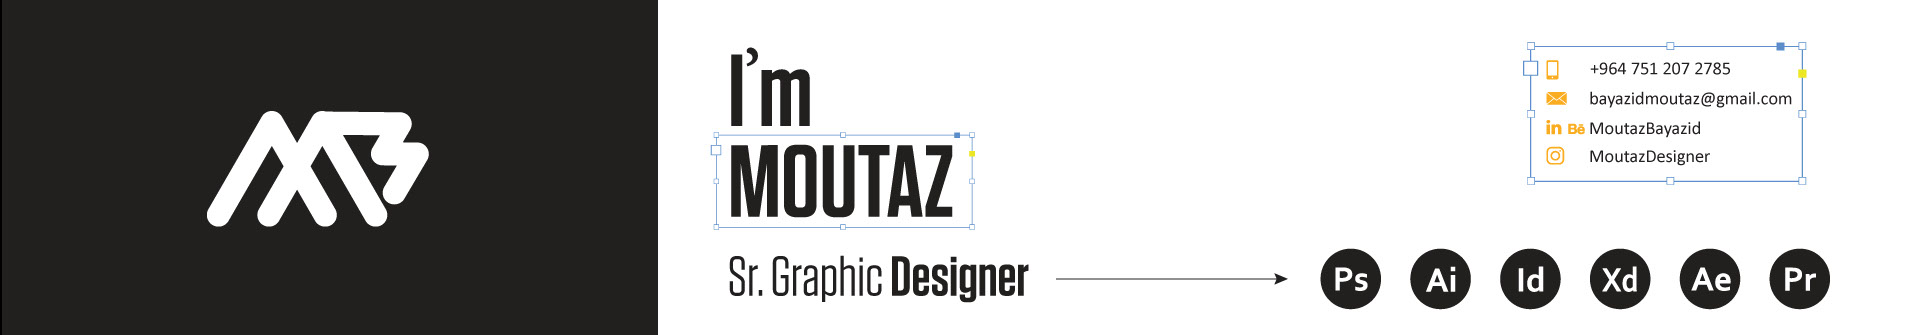 Banner de perfil de Moutaz Bayazid